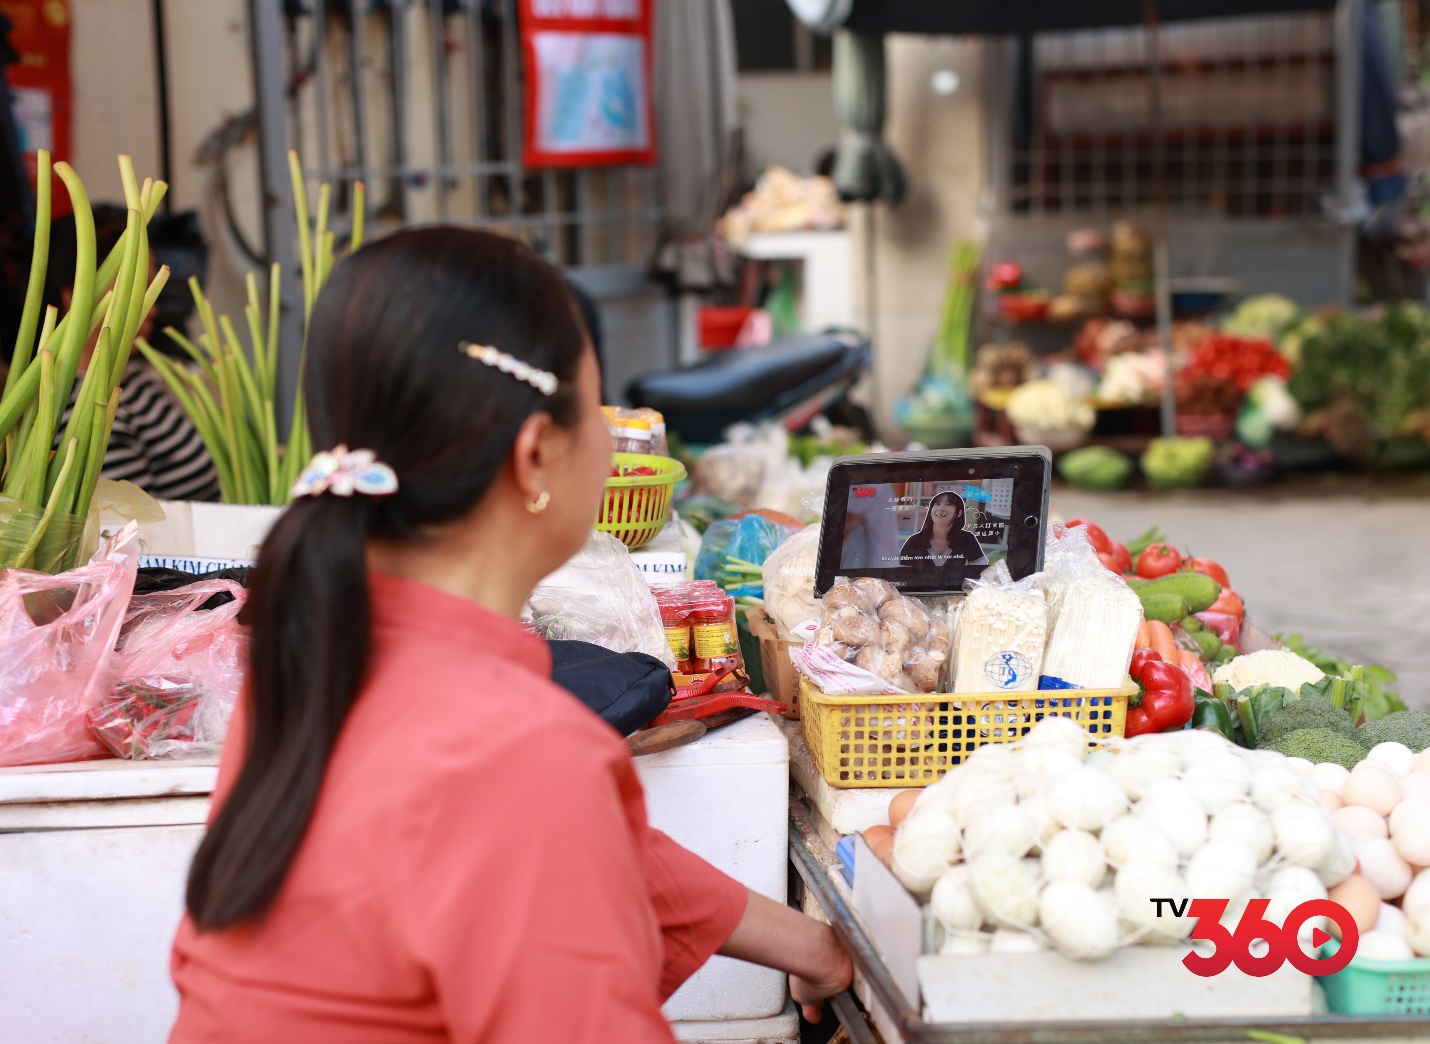 TV360 đạt 10 triệu người dùng trong tháng, trở thành ứng dụng OTT truyền hình số 1 Việt Nam - Ảnh 2.